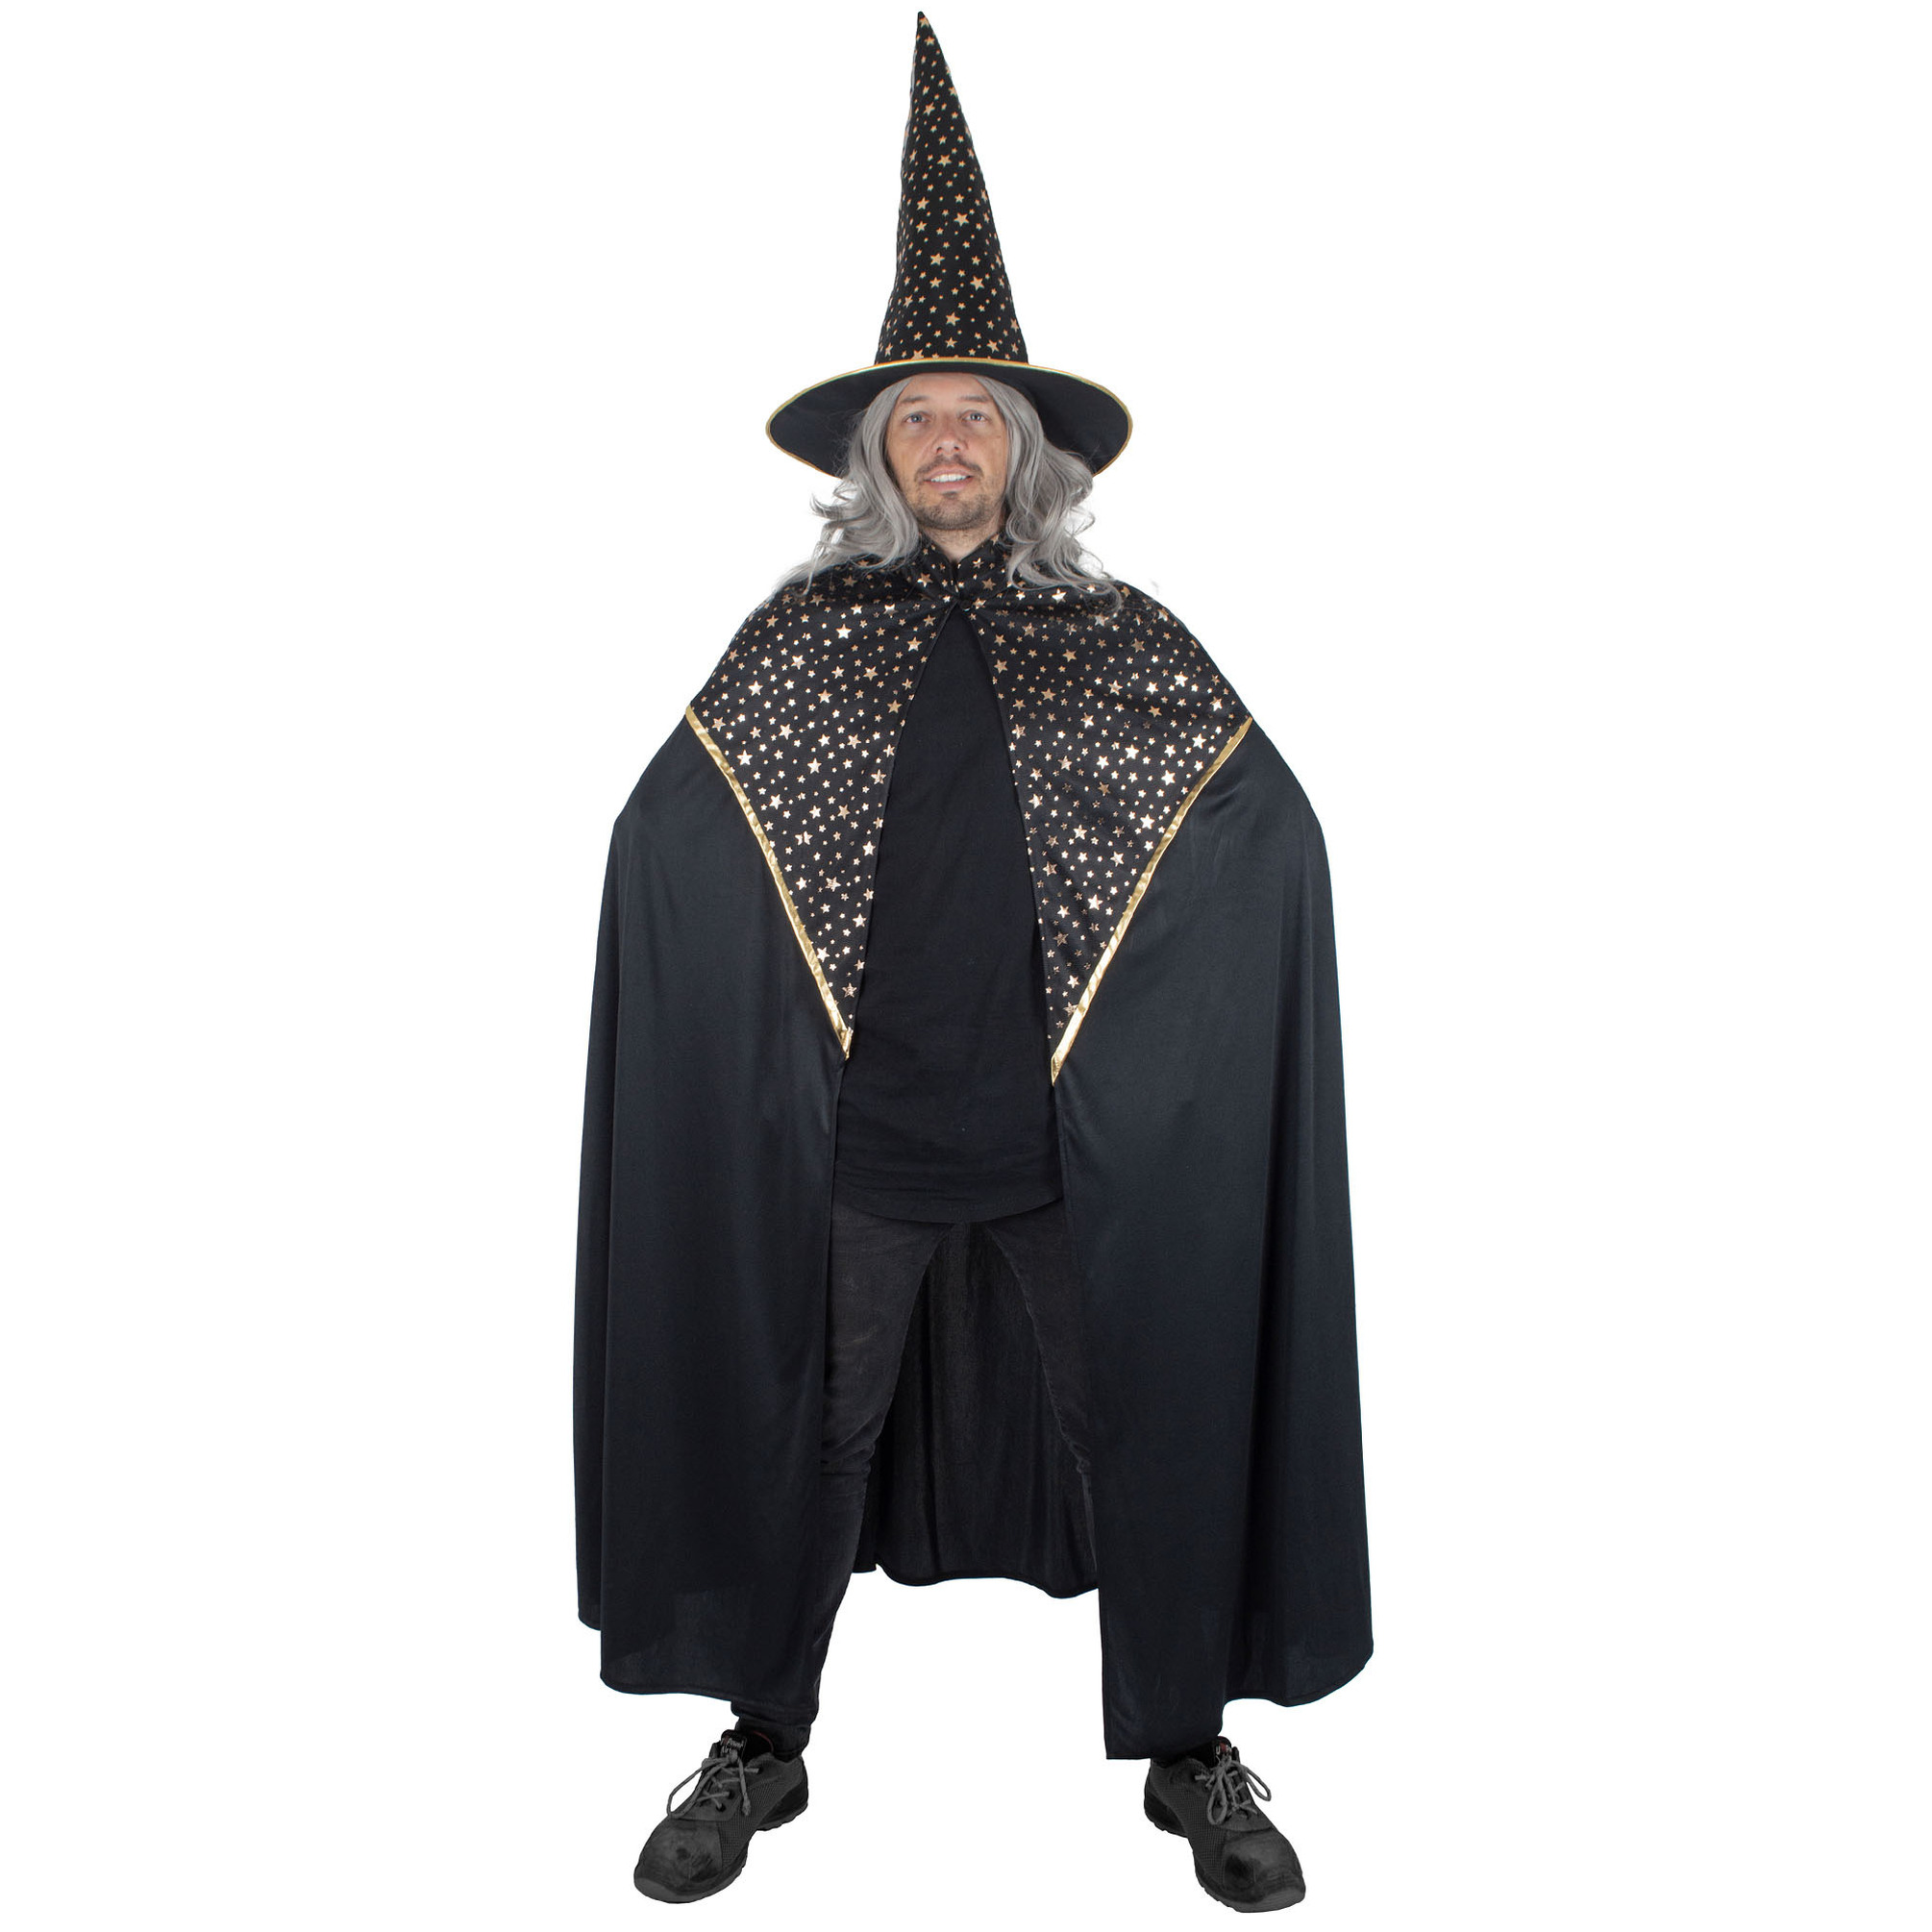 Funny Fashion Tovenaars verkleed cape/hoed - volwassenen - zwart met sterren - Carnaval kostuum